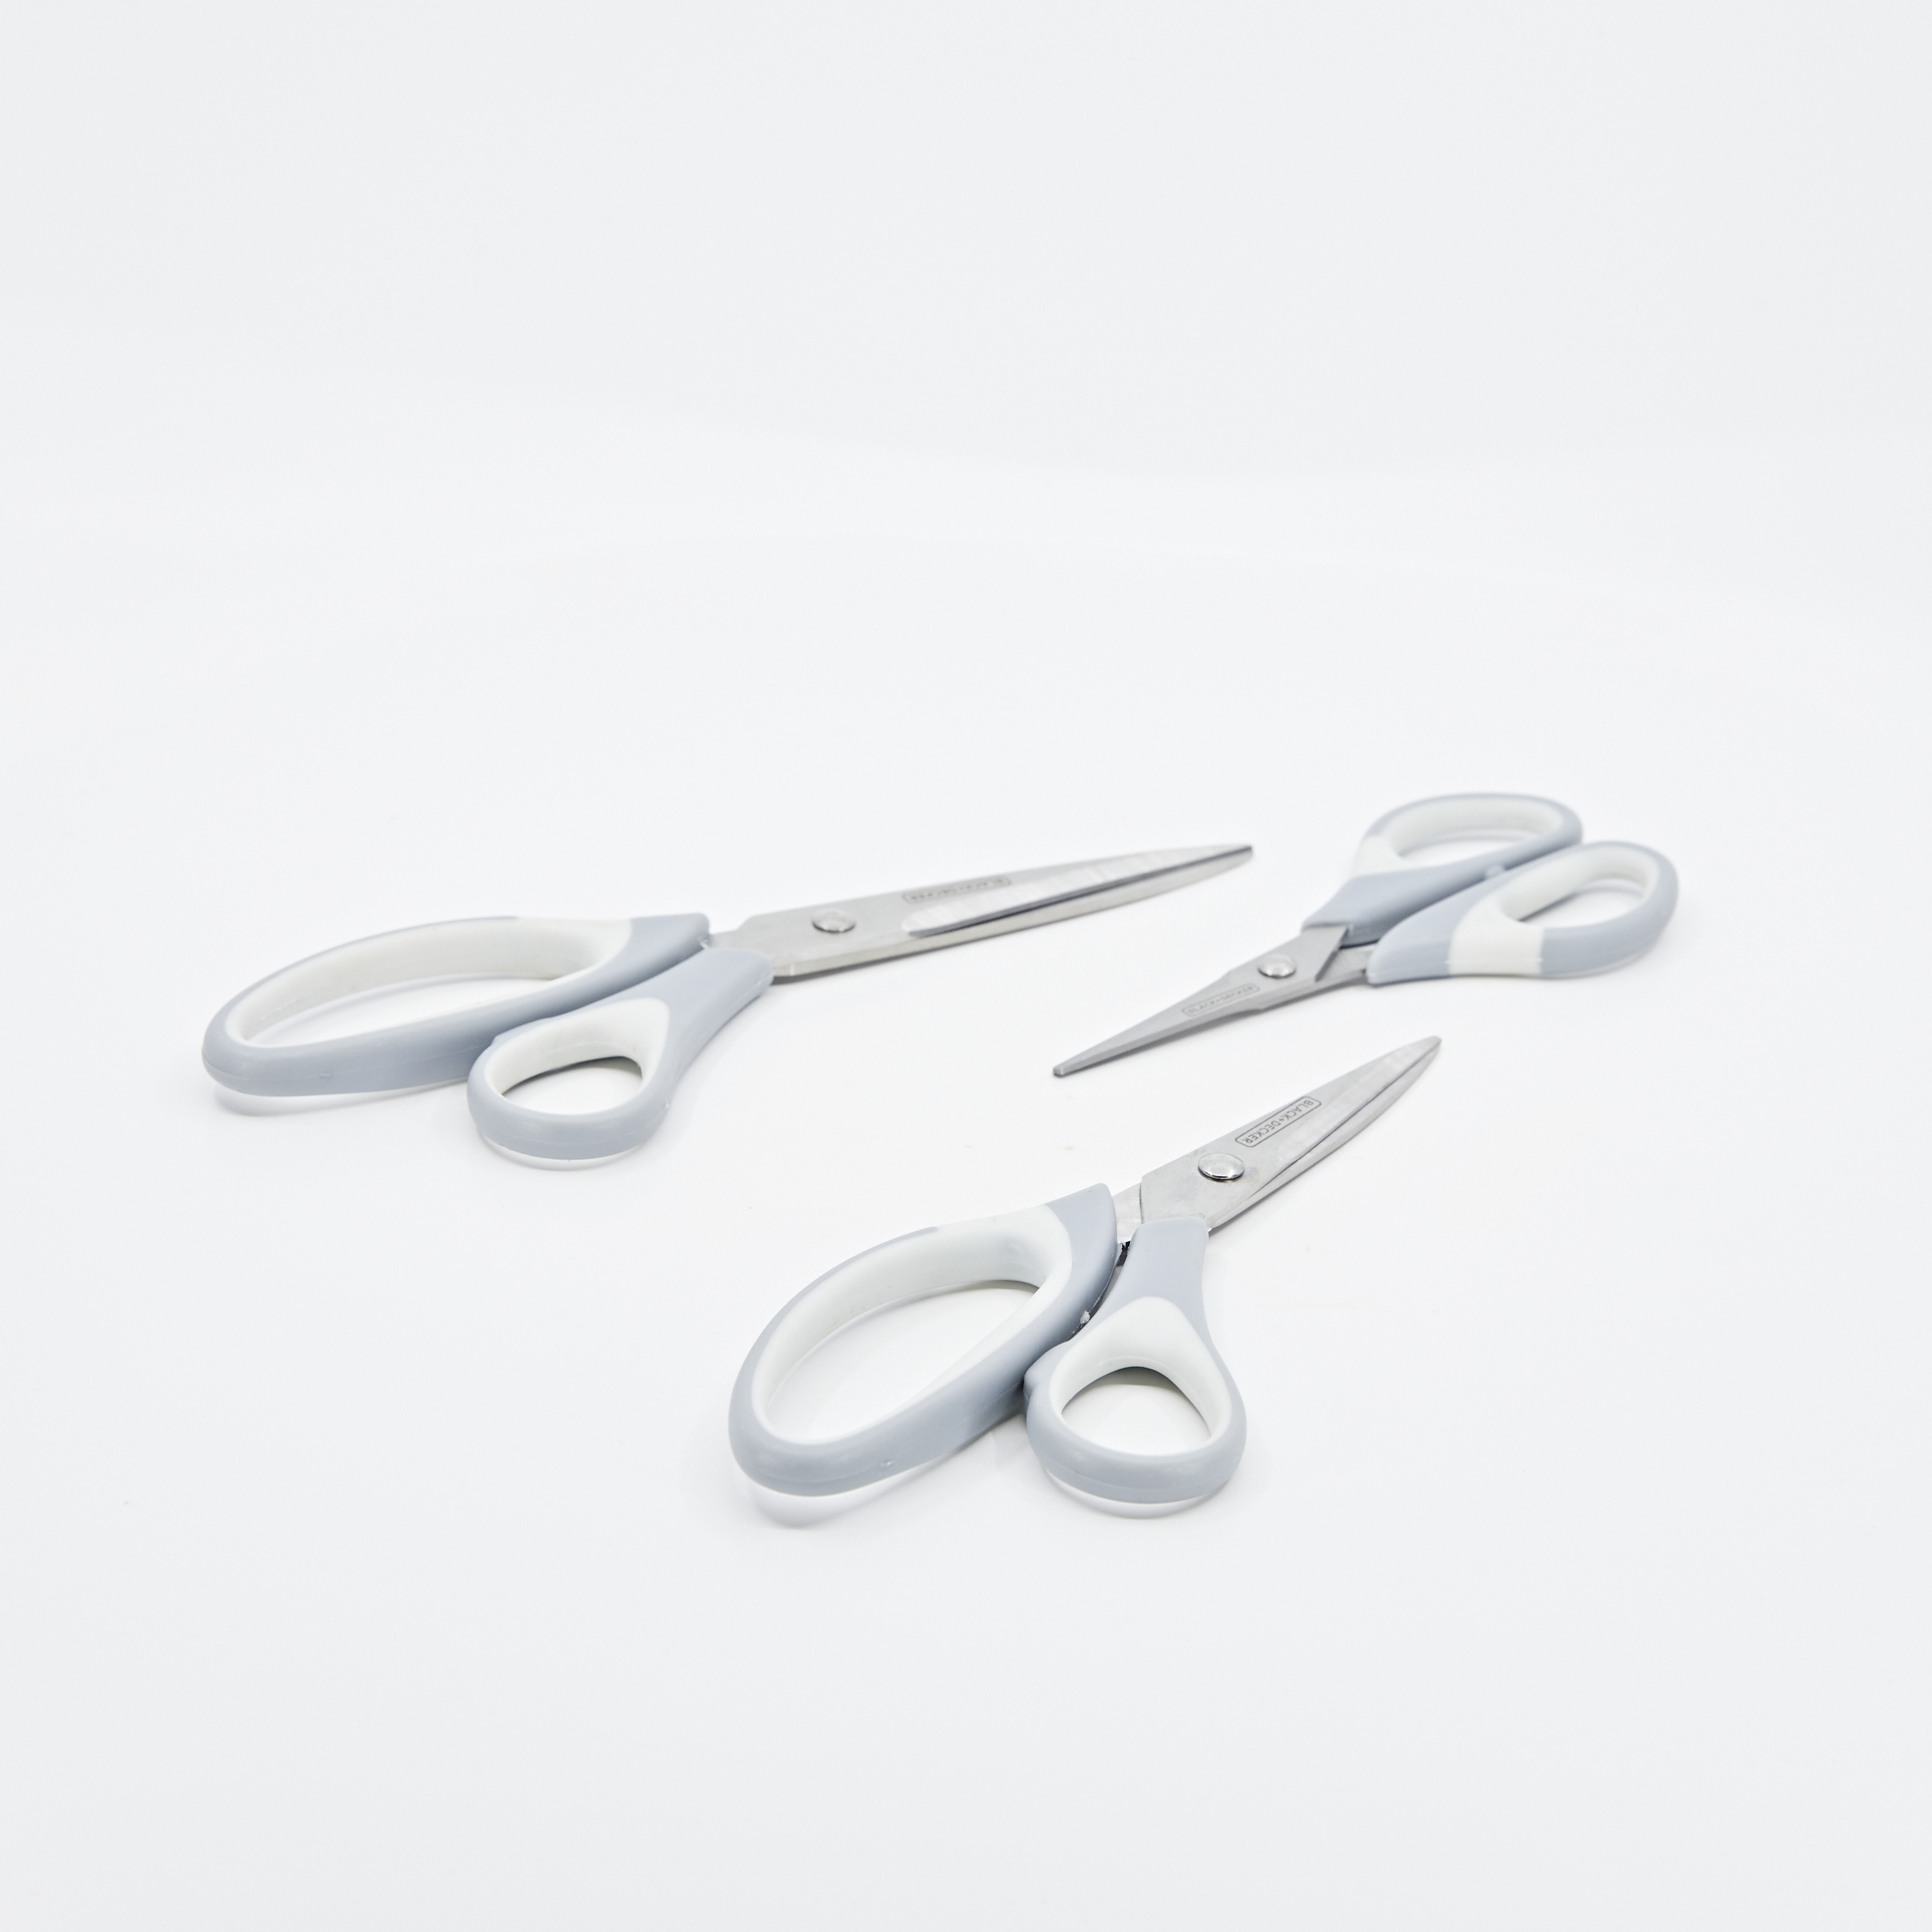 Black+decker Scissors, Multi-Pack, White (BDHT20001)